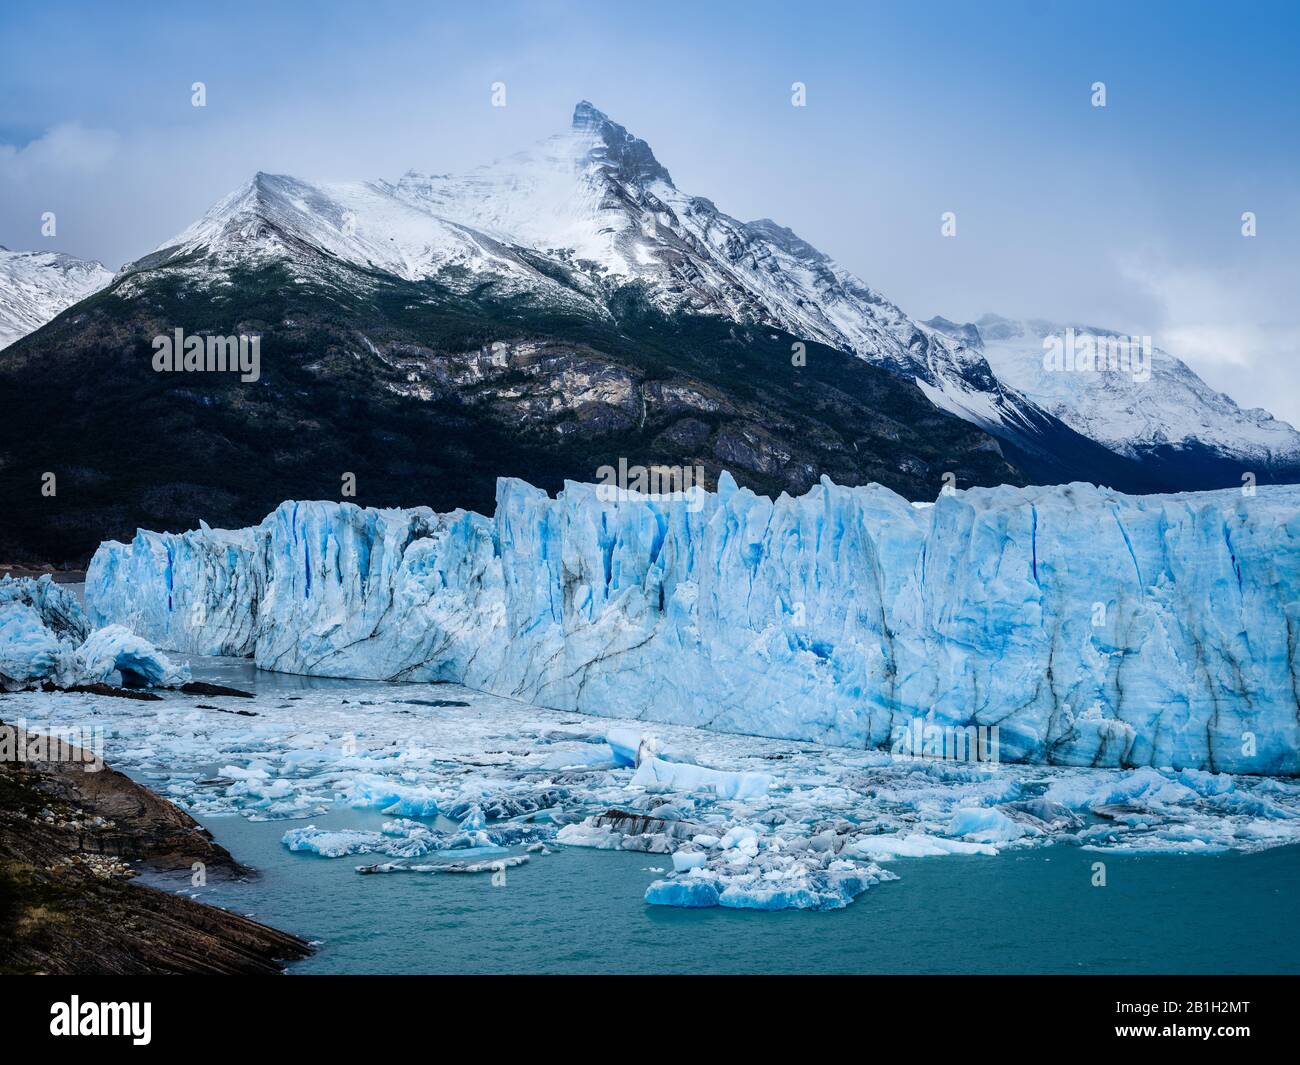 PARCO Nazionale LOS GLACIARES, ARGENTINA - CIRCA FEBBRAIO 2019: Vista del ghiacciaio Perito Moreno, un famoso punto di riferimento all'interno del Los Glaciares National P. Foto Stock